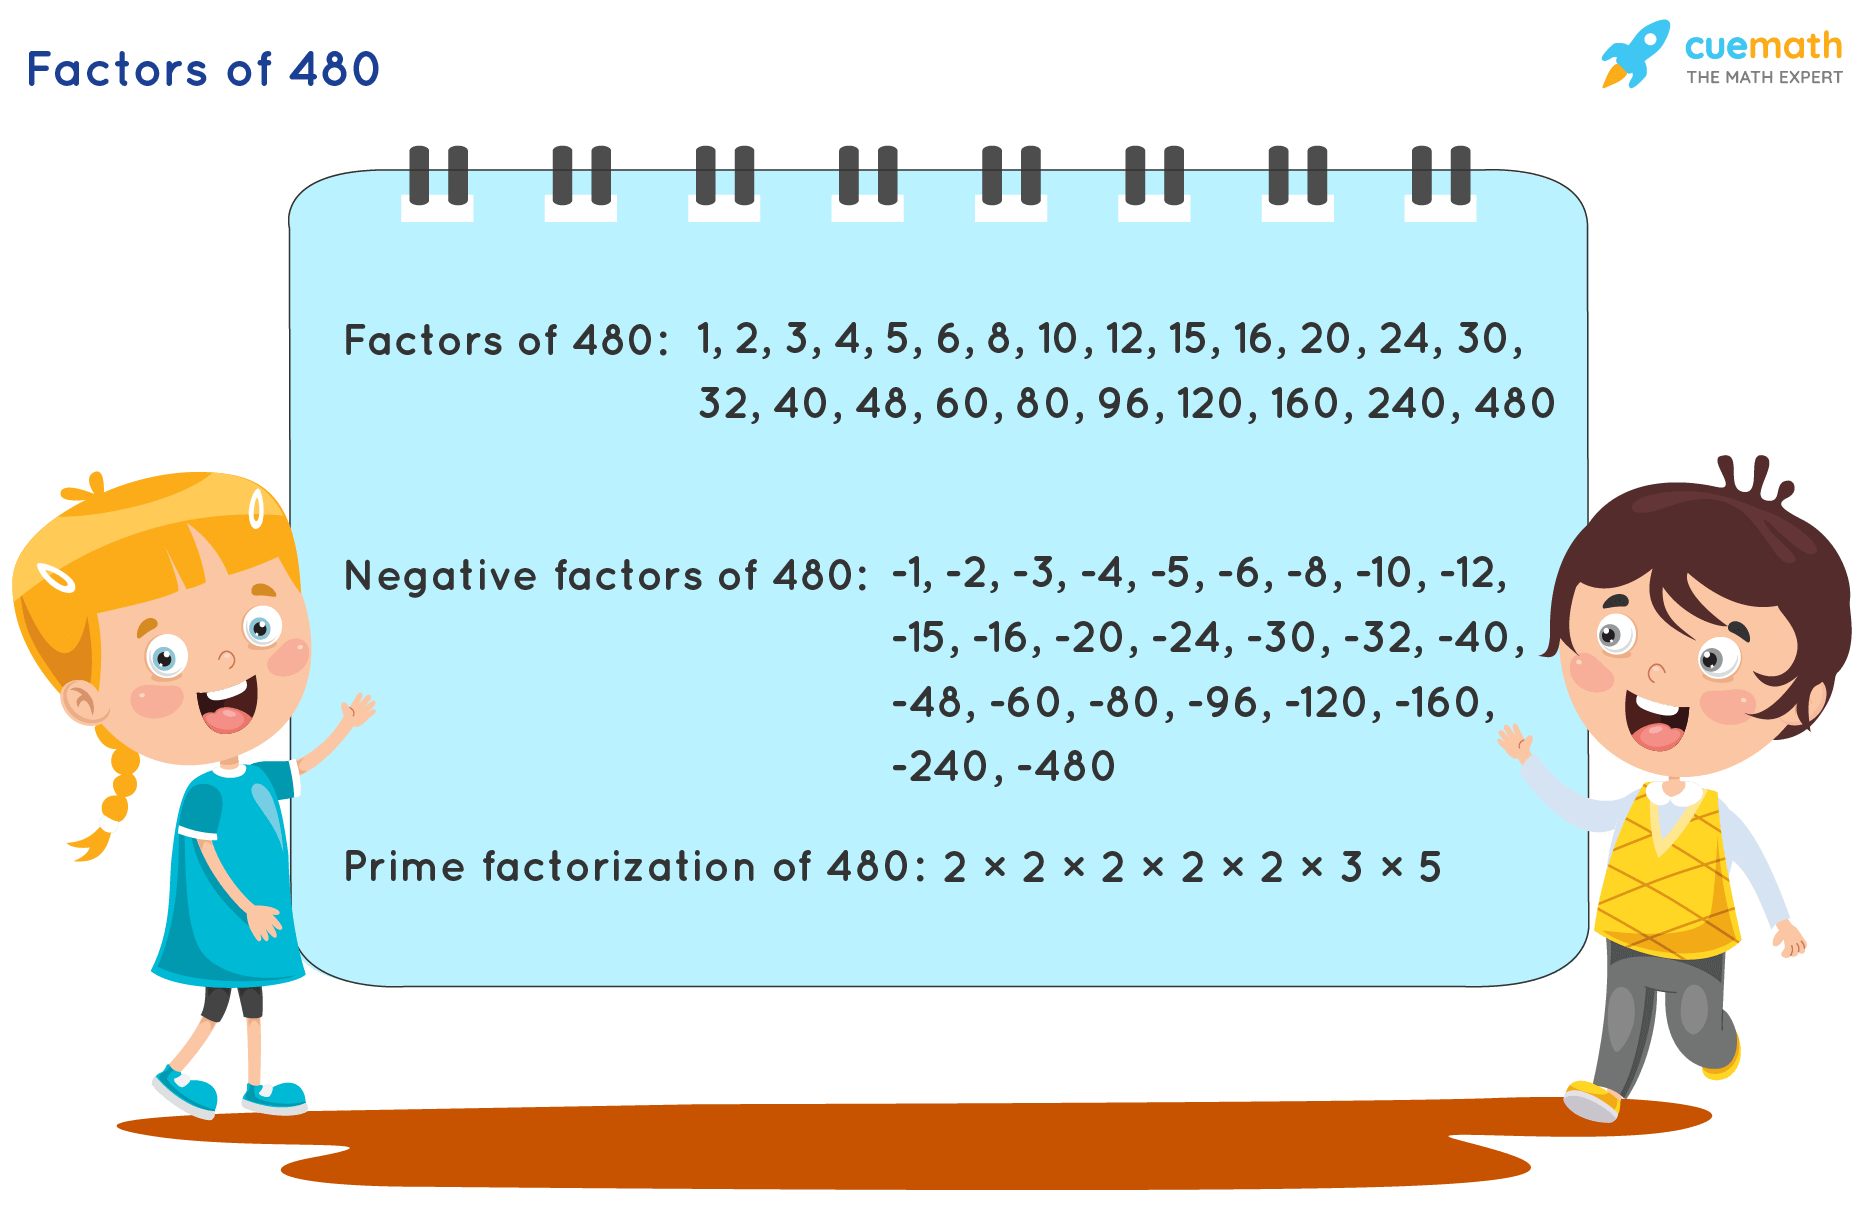 Factors of 480